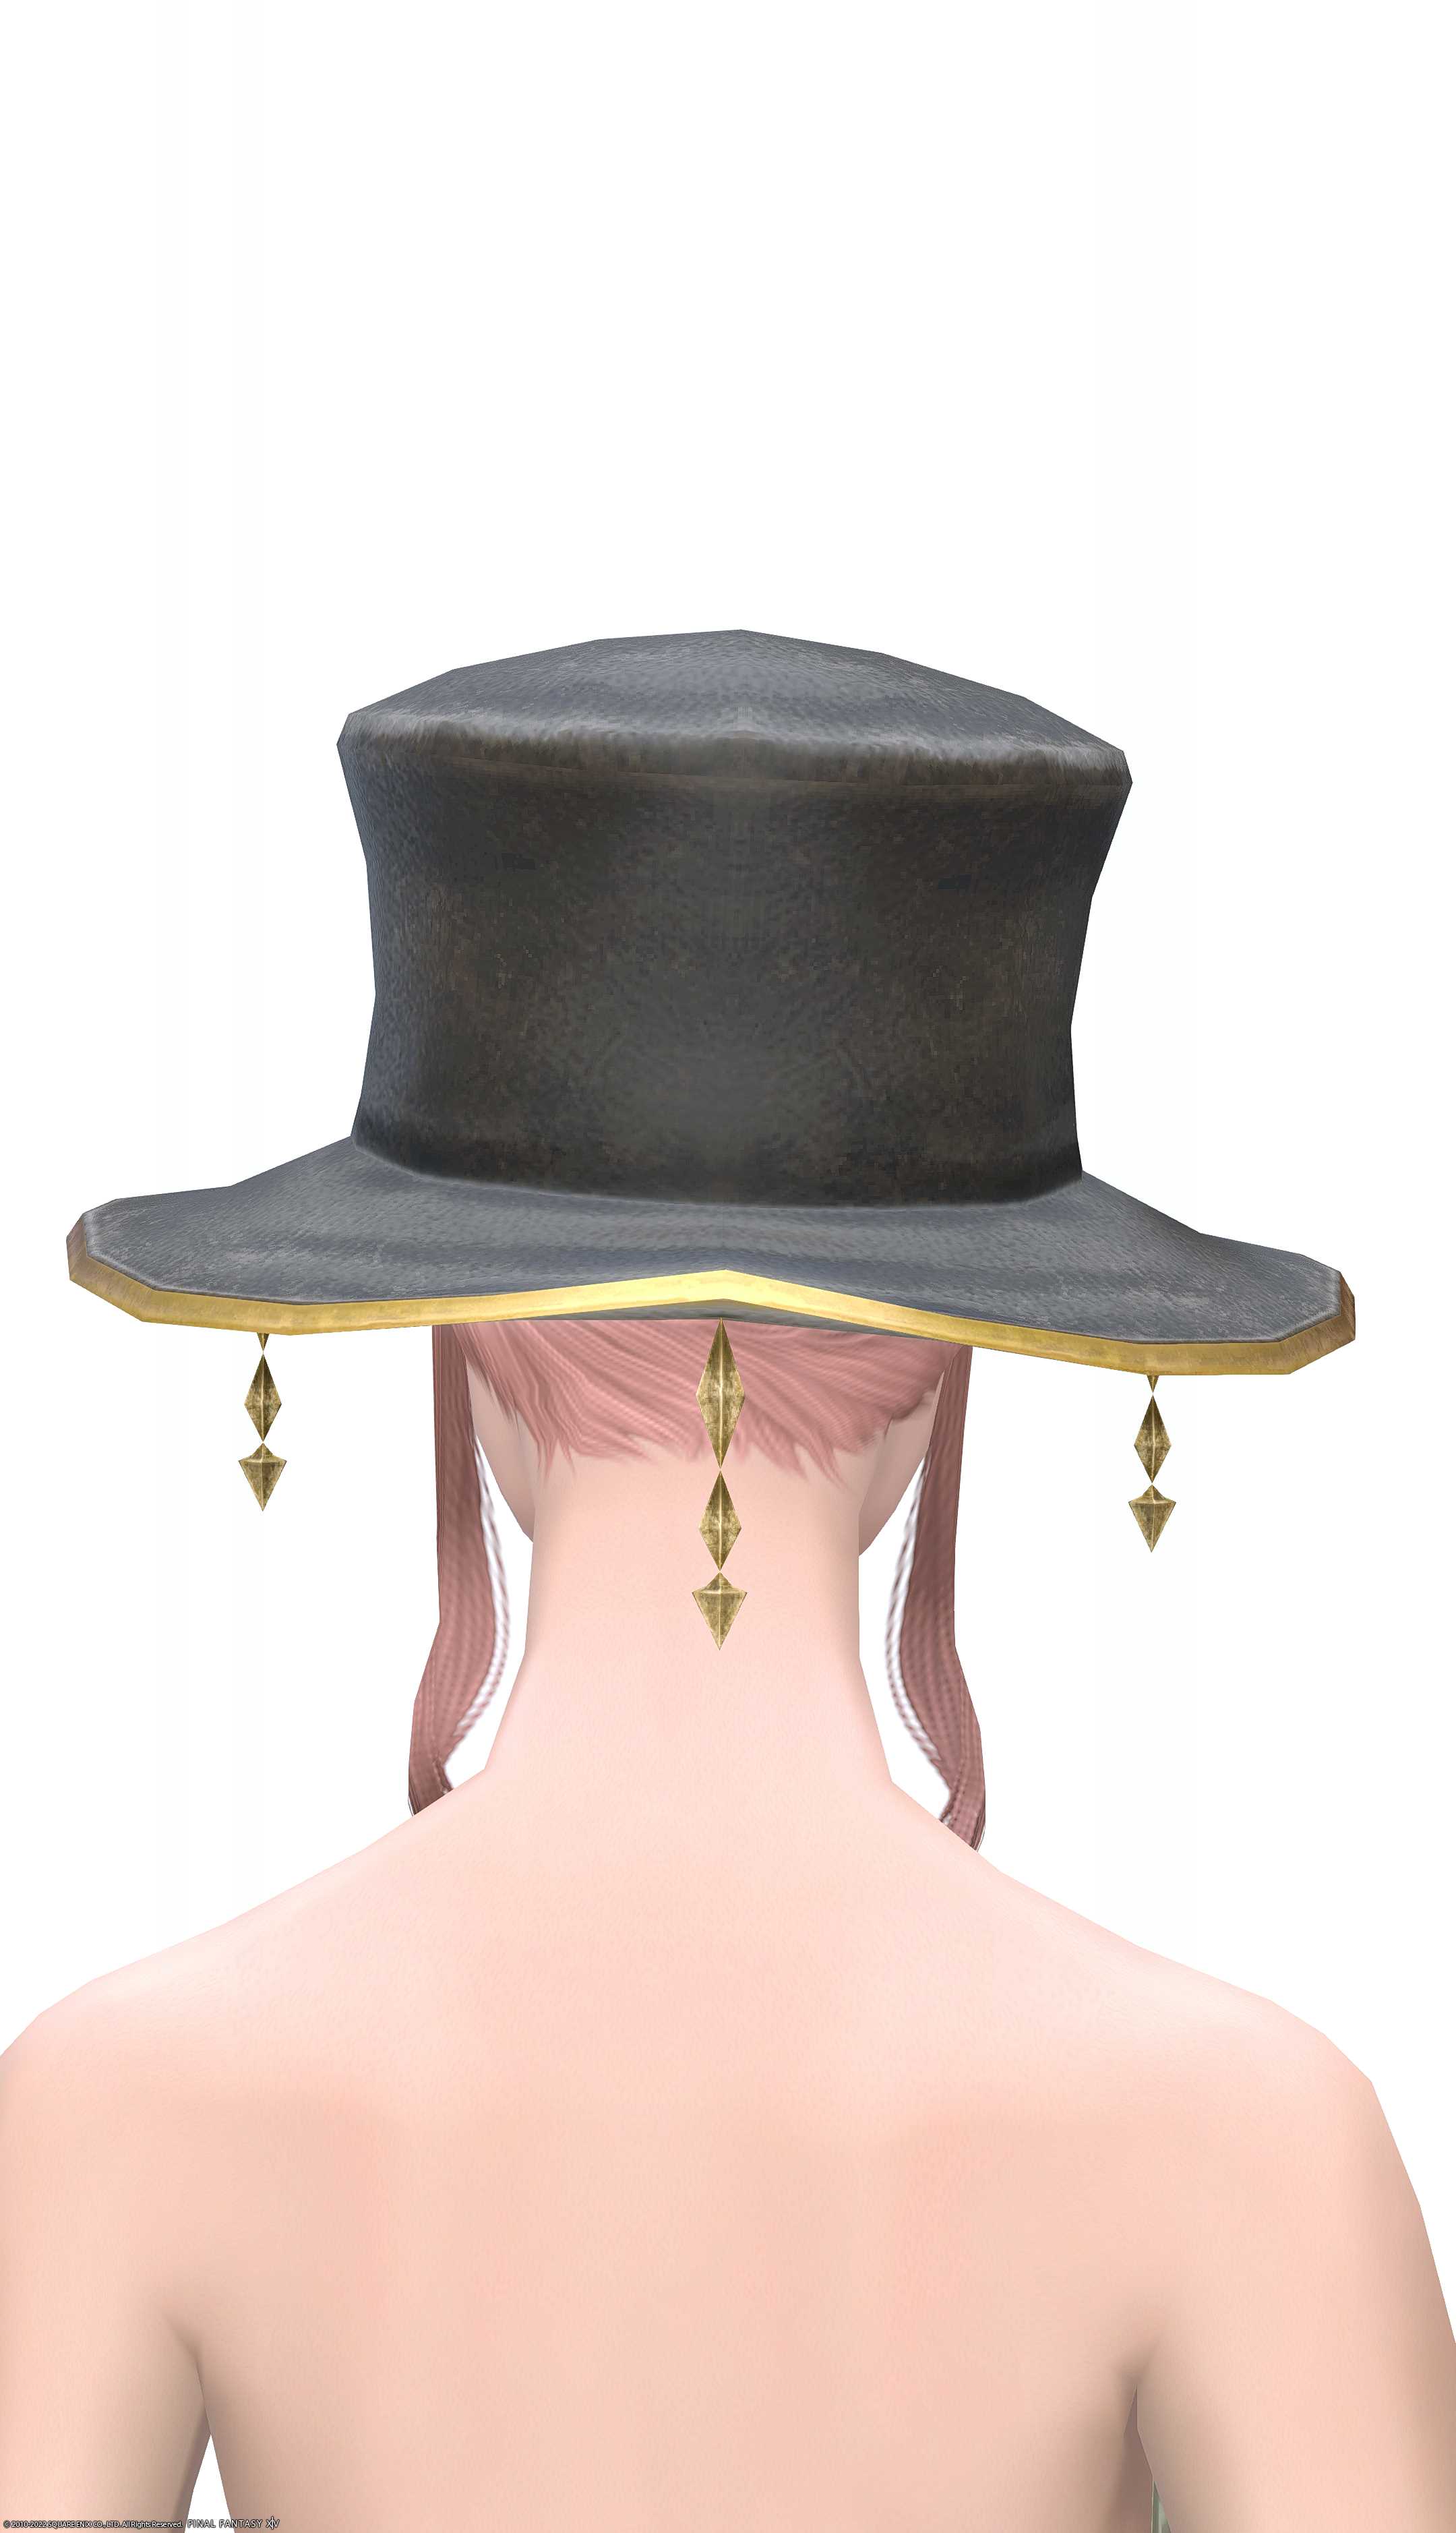 エクサーク・キャスターハット | FF14ミラプリ - Exarchic Hat of Casting - 帽子/ハット